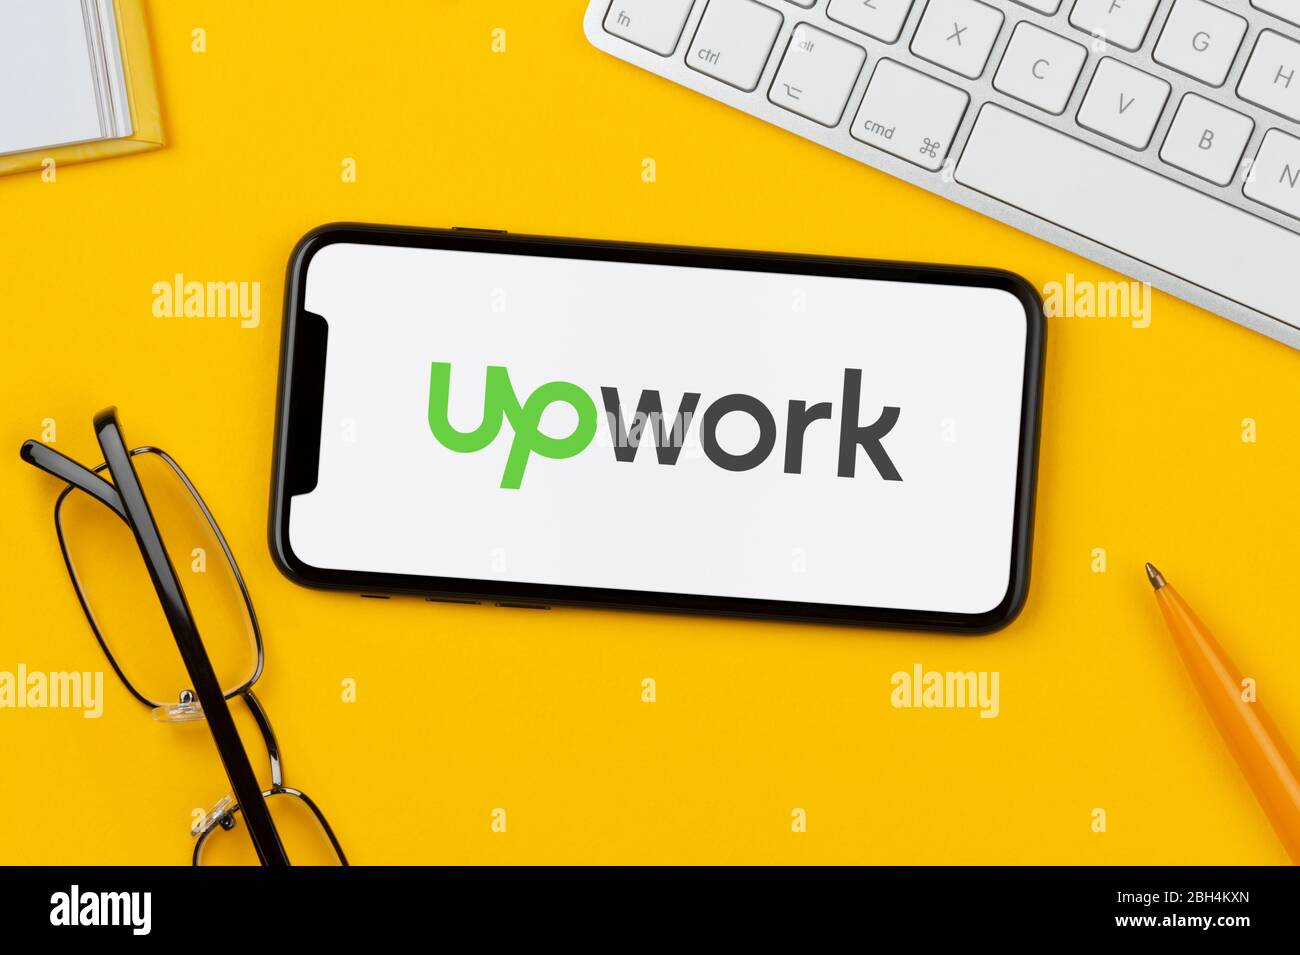 Un smartphone que muestra el logotipo de Upwork se apoya sobre un fondo amarillo junto con un teclado, gafas, lápiz y libro (sólo para uso editorial). Foto de stock